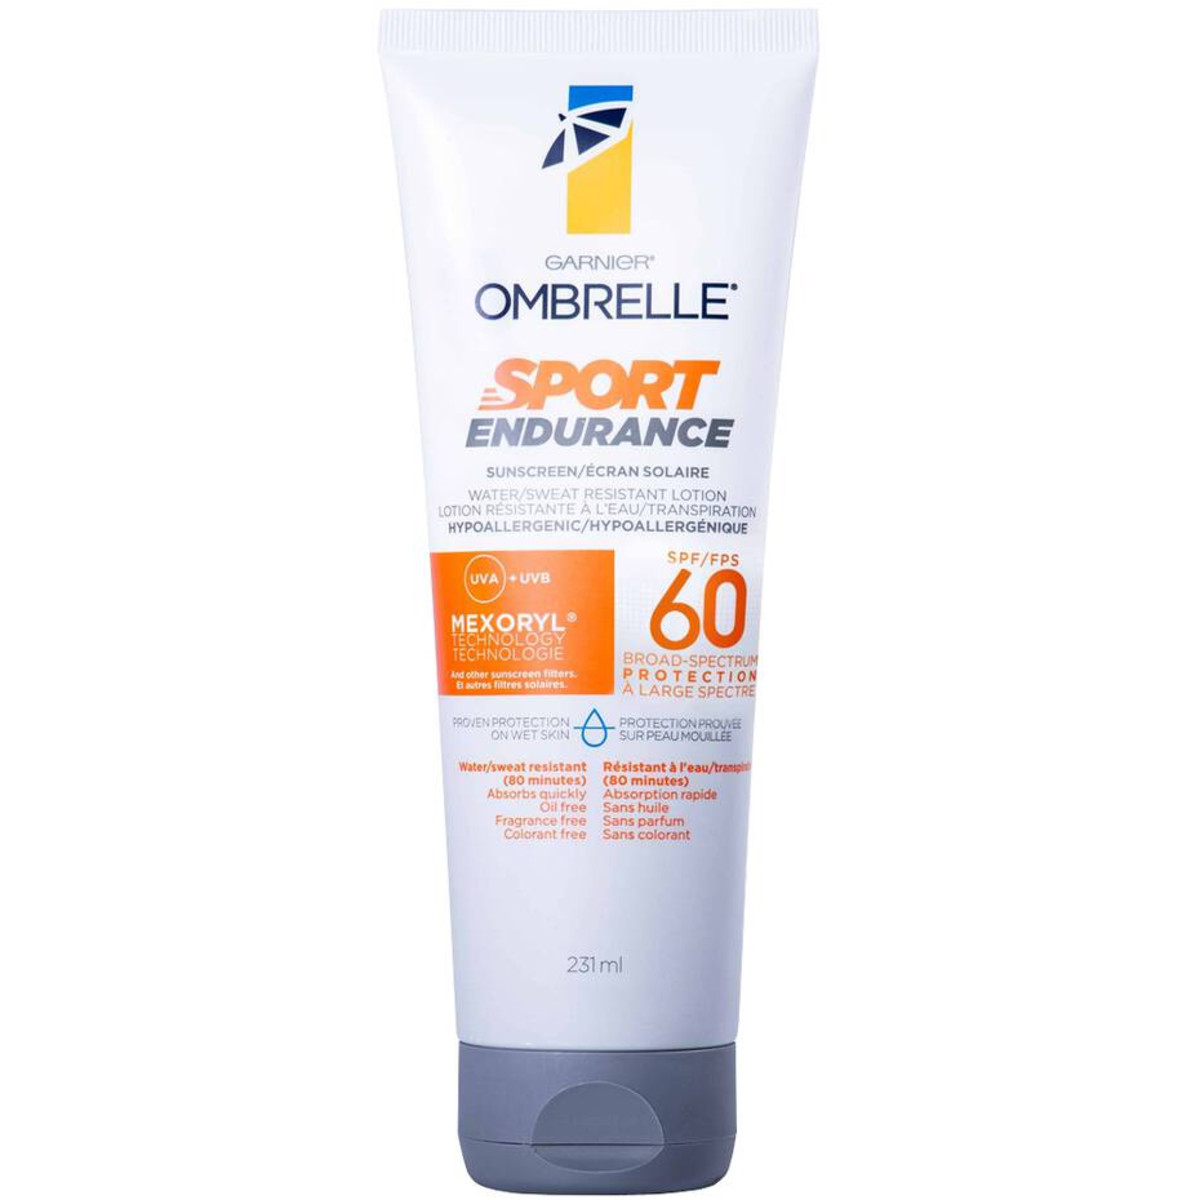 Garnier Ombrelle Sport Endurance SPF 60 is moisturizing yet light on the skin